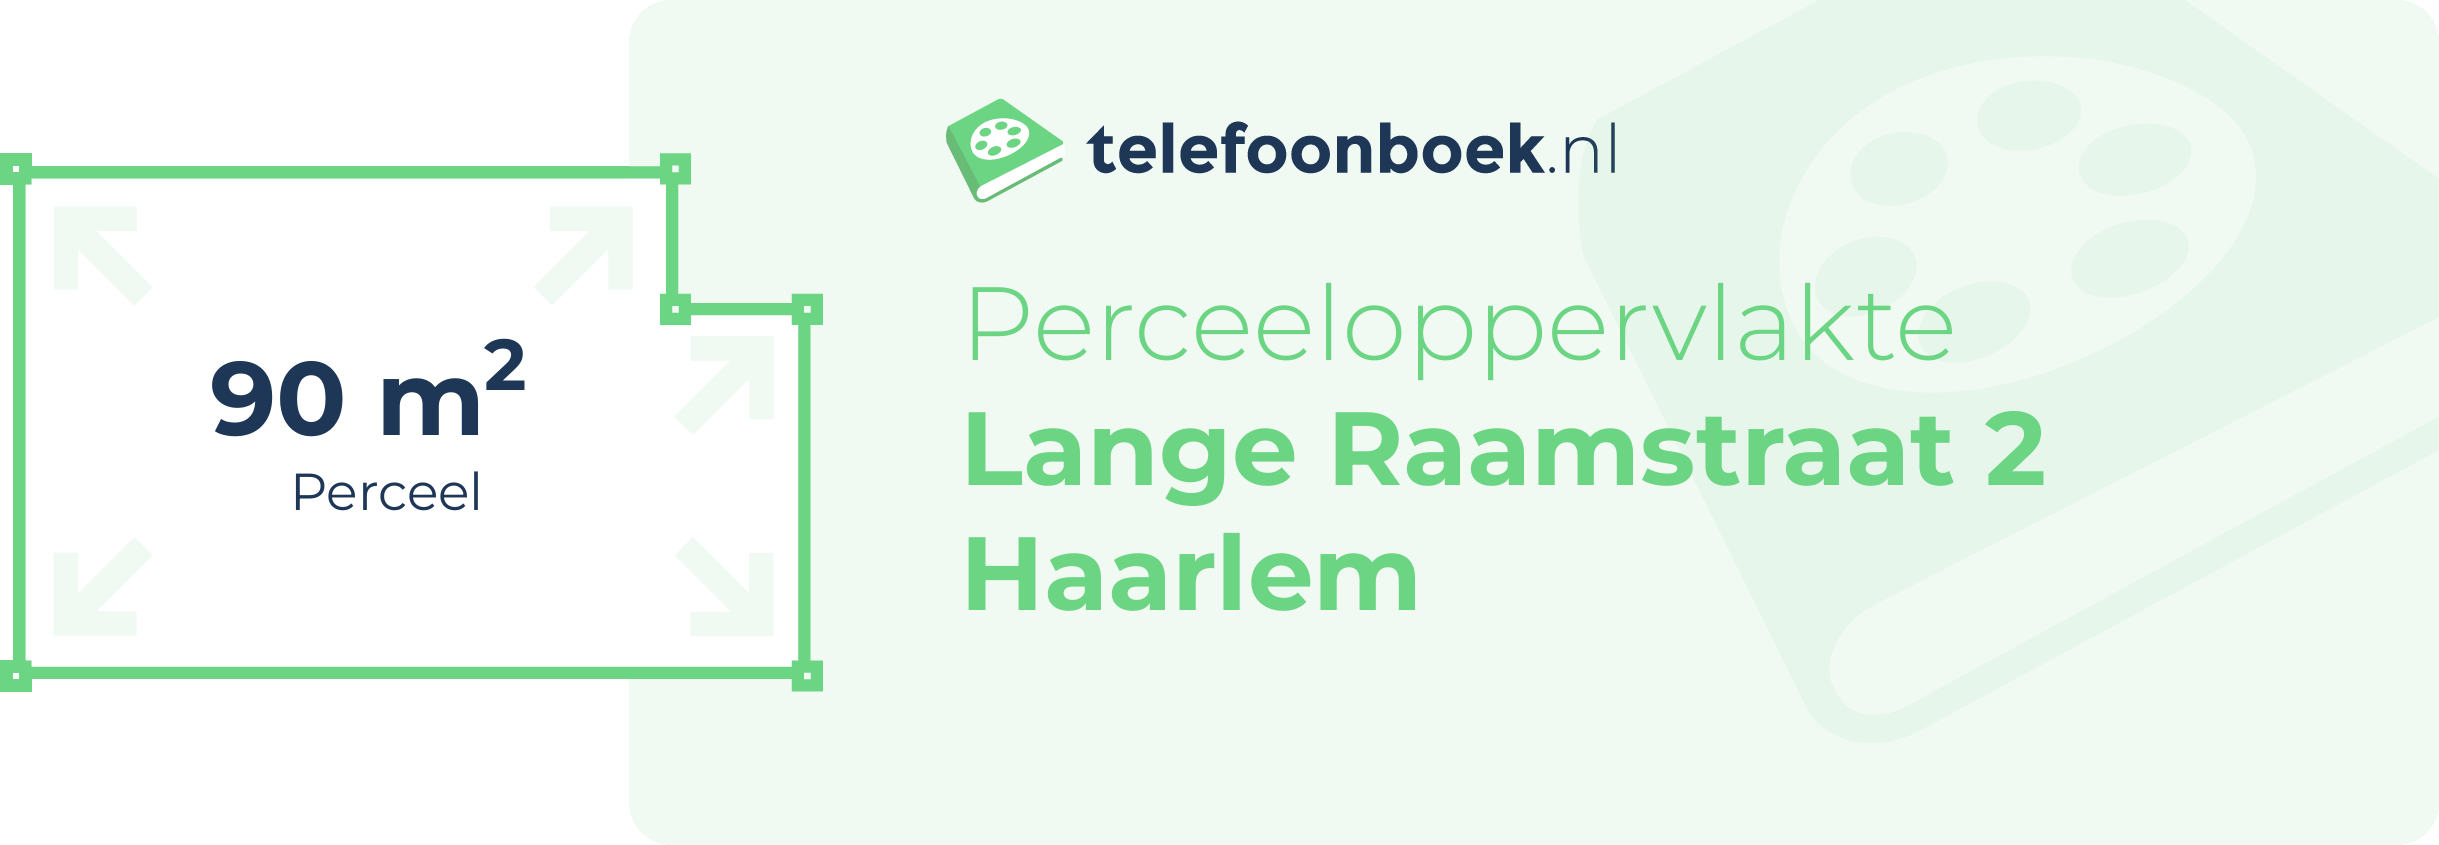 Perceeloppervlakte Lange Raamstraat 2 Haarlem